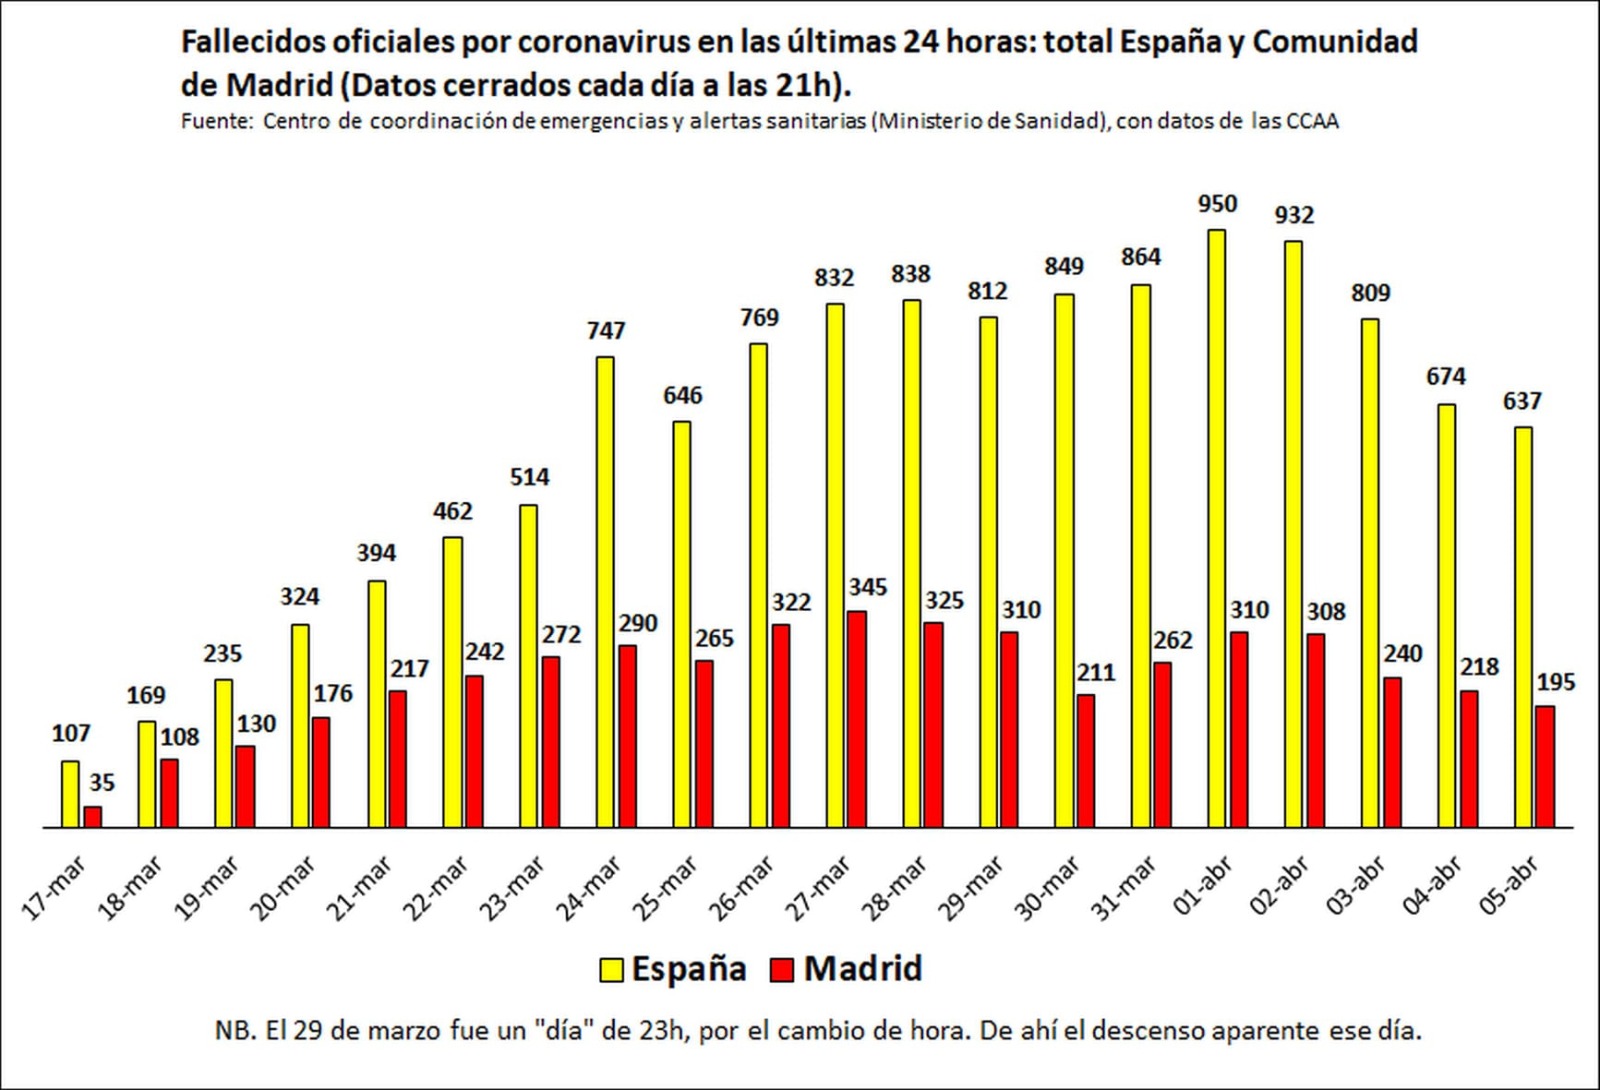 Madrid llegó al pico de mortalidad 5 días antes que el conjunto de España y lo ha reducido 10 puntos más